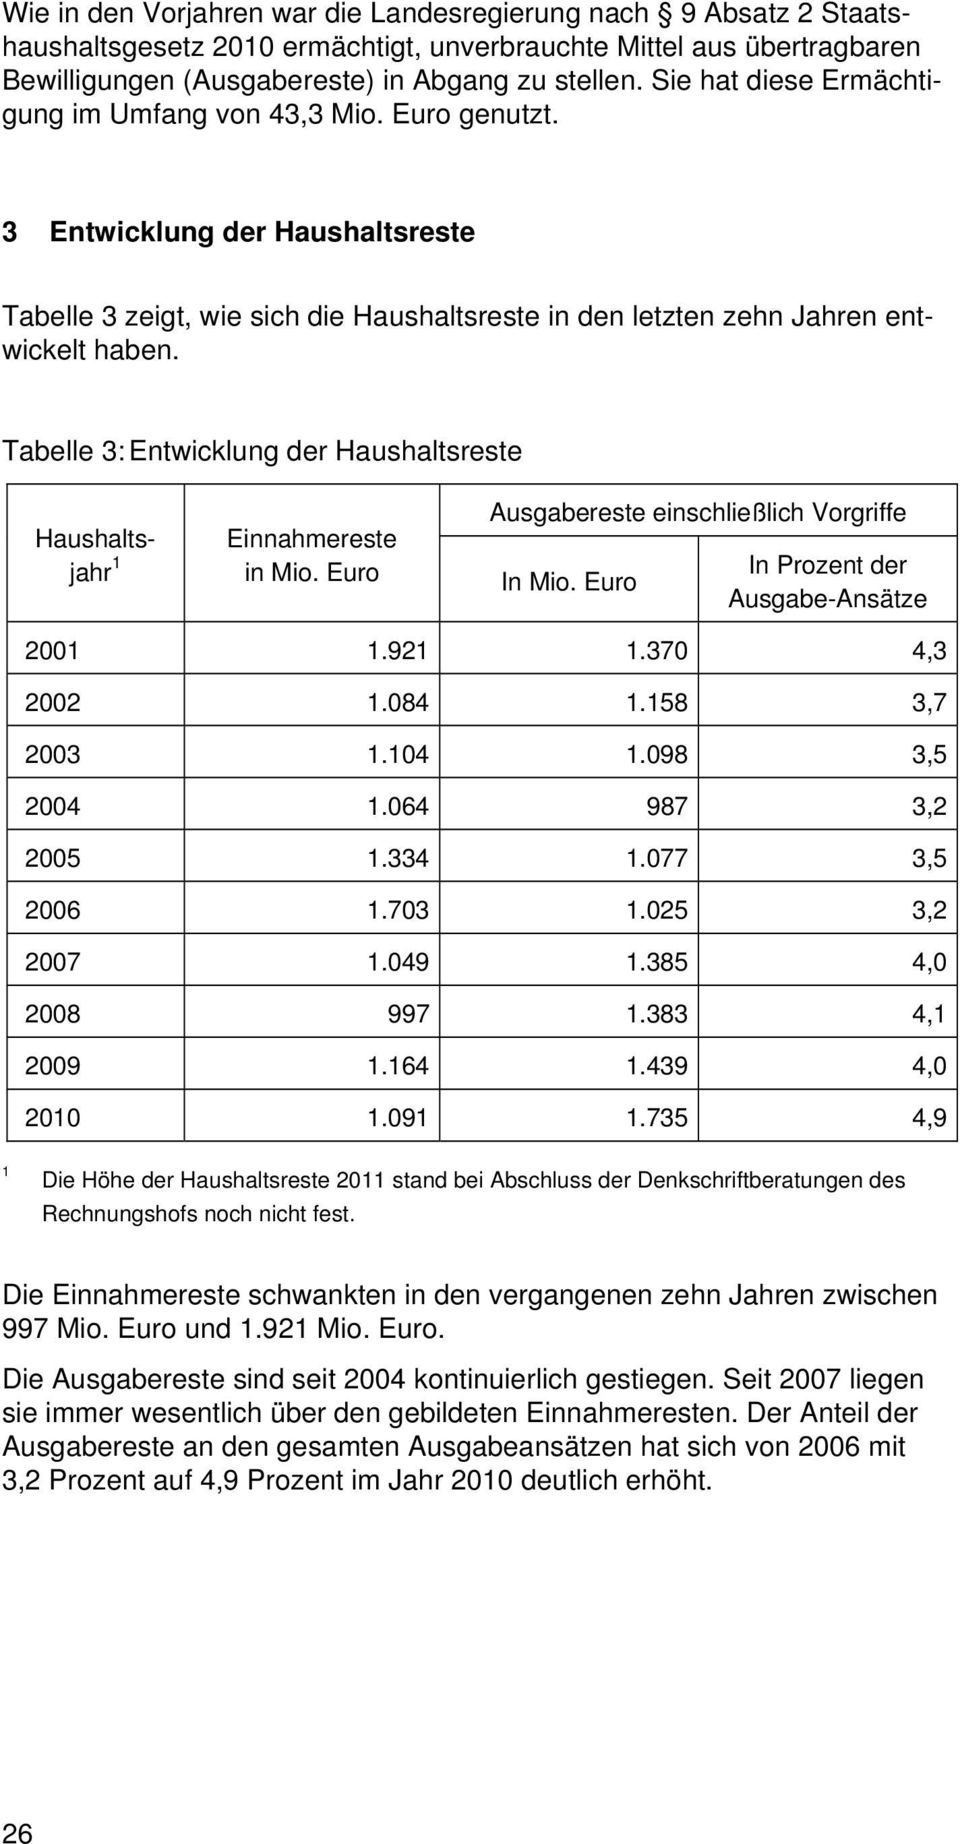 Tabelle 3: Entwicklung der Haushaltsreste Haushaltsjahr 1 Einnahmereste in Mio. Euro Ausgabereste einschließlich Vorgriffe In Mio. Euro In Prozent der Ausgabe-Ansätze 2001 1.921 1.370 4,3 2002 1.